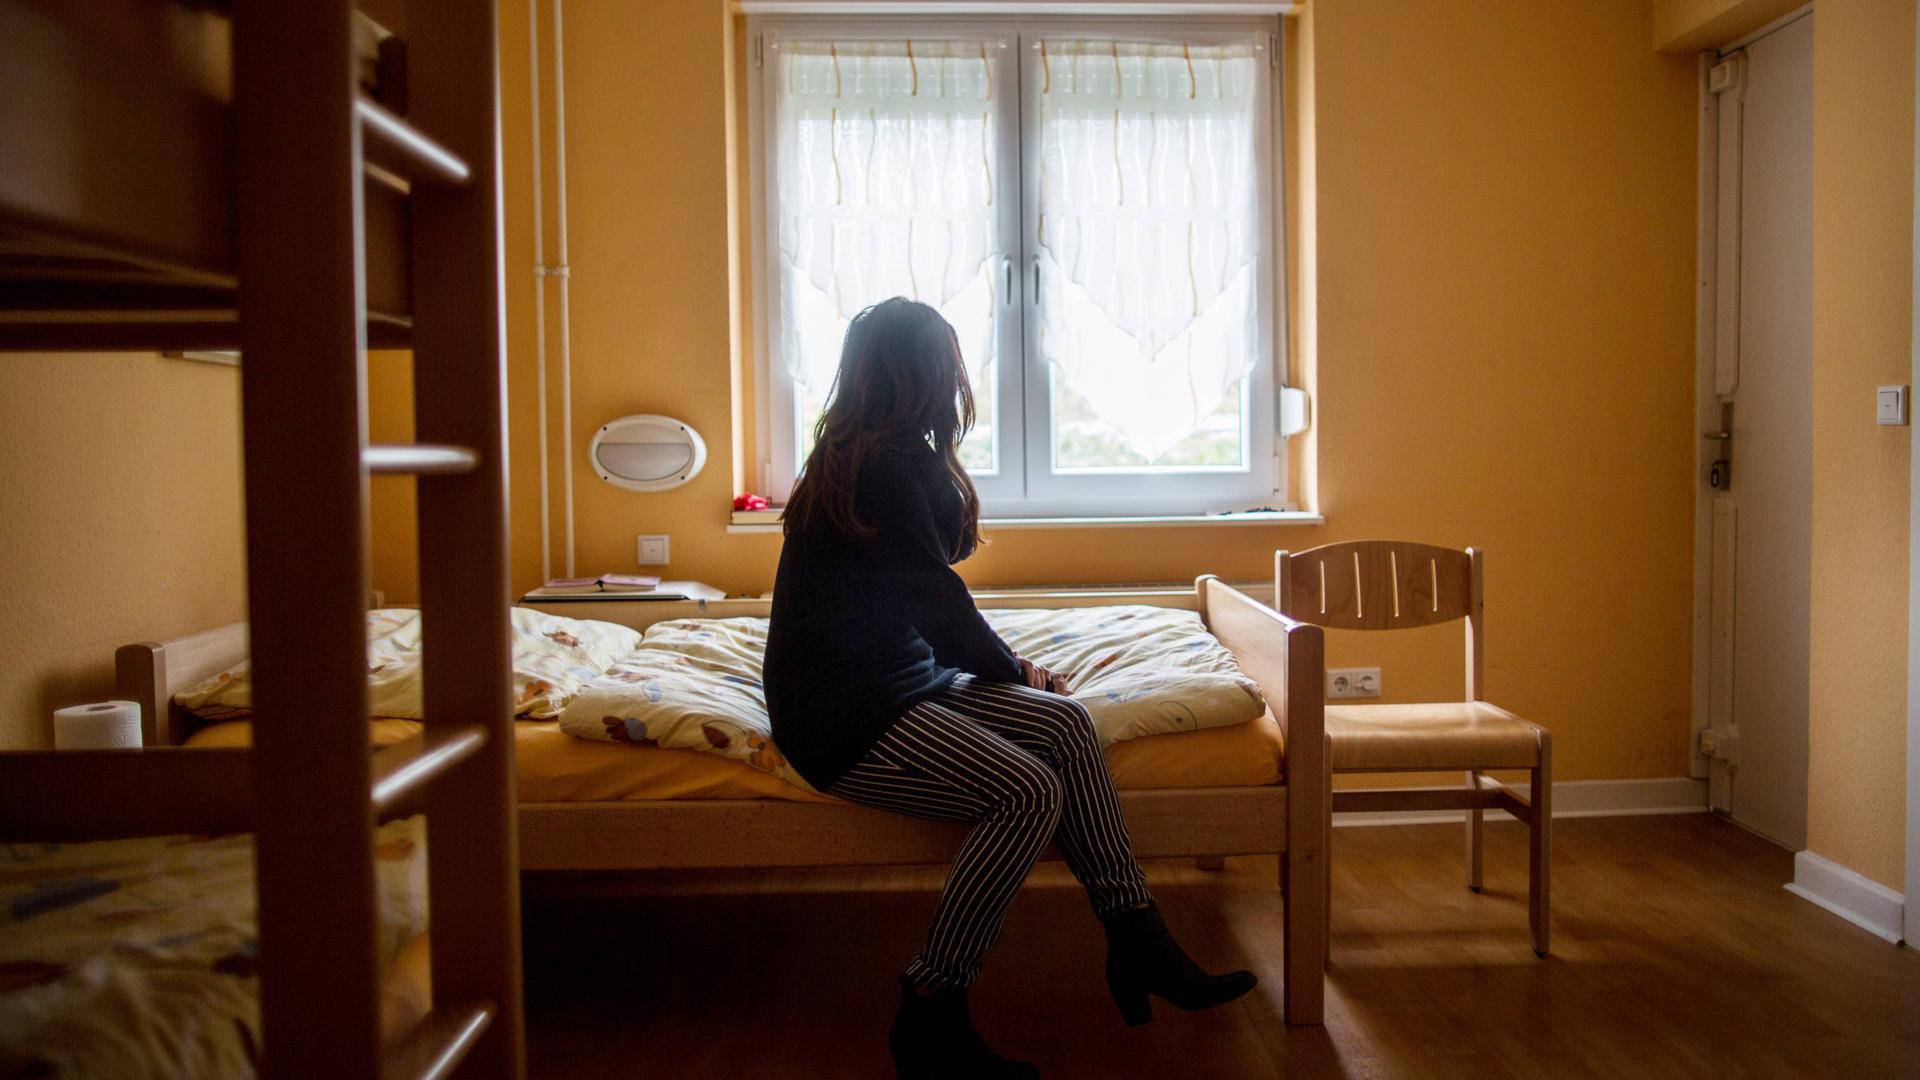 Eine Frau sitzt auf einem Bett vor einem geschlossenen Fenster. Links ist eine Leiter zu einem Etagenbett zu sehen.